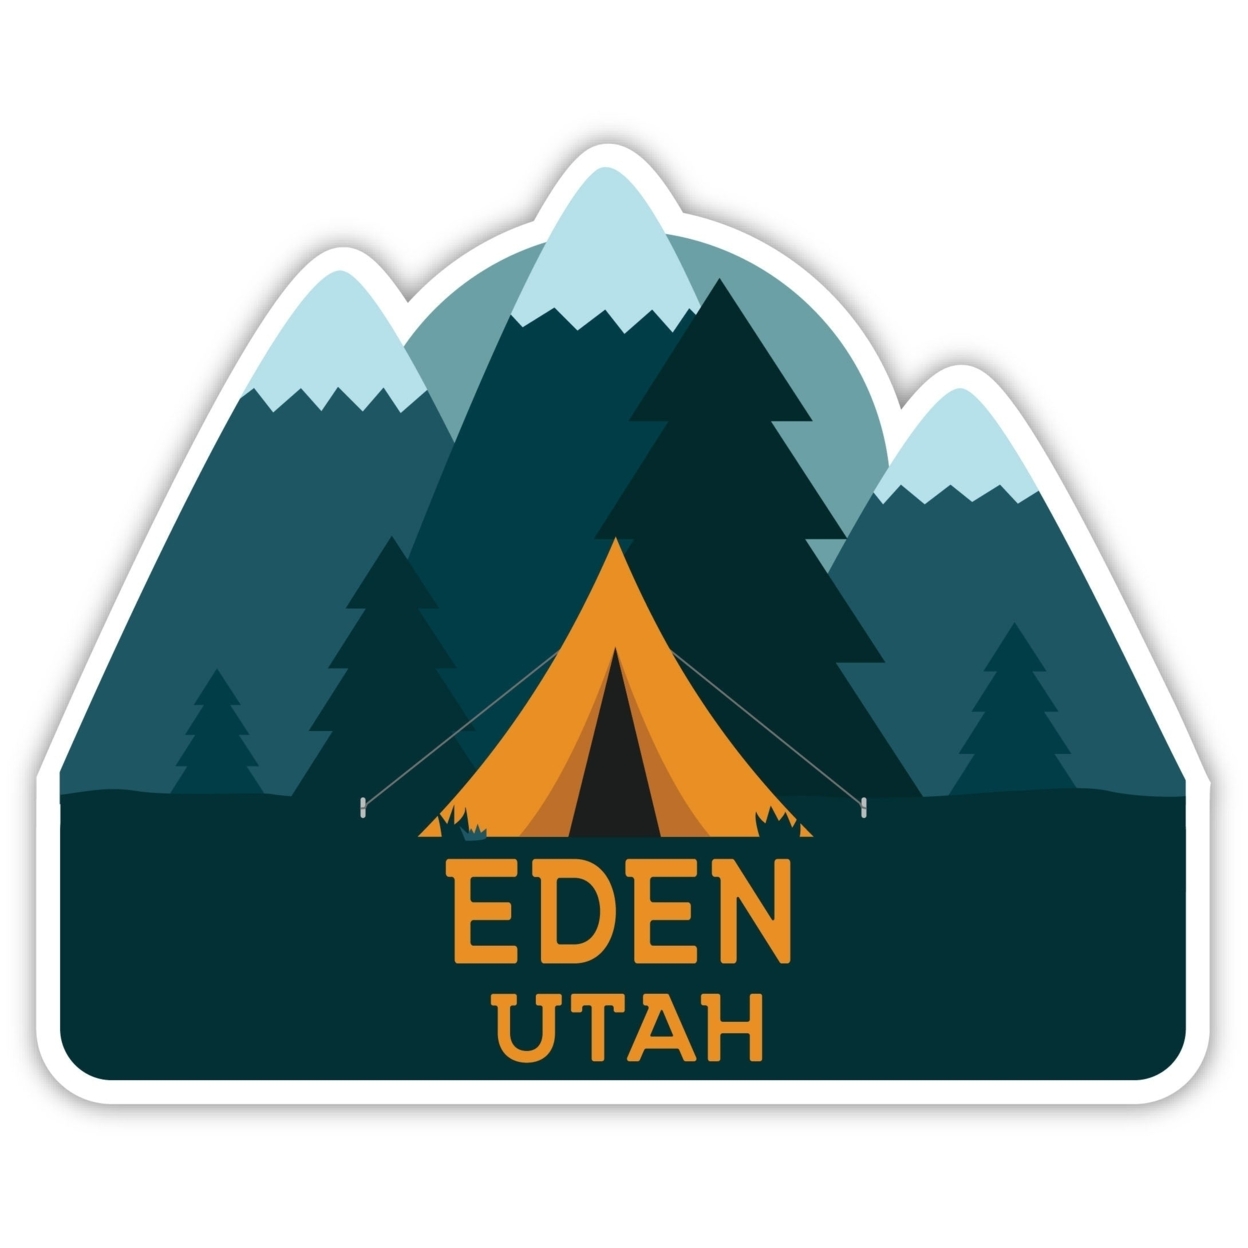 Eden Utah Souvenir Decorative Stickers (Choose Theme And Size) - Single Unit, 12-Inch, Tent